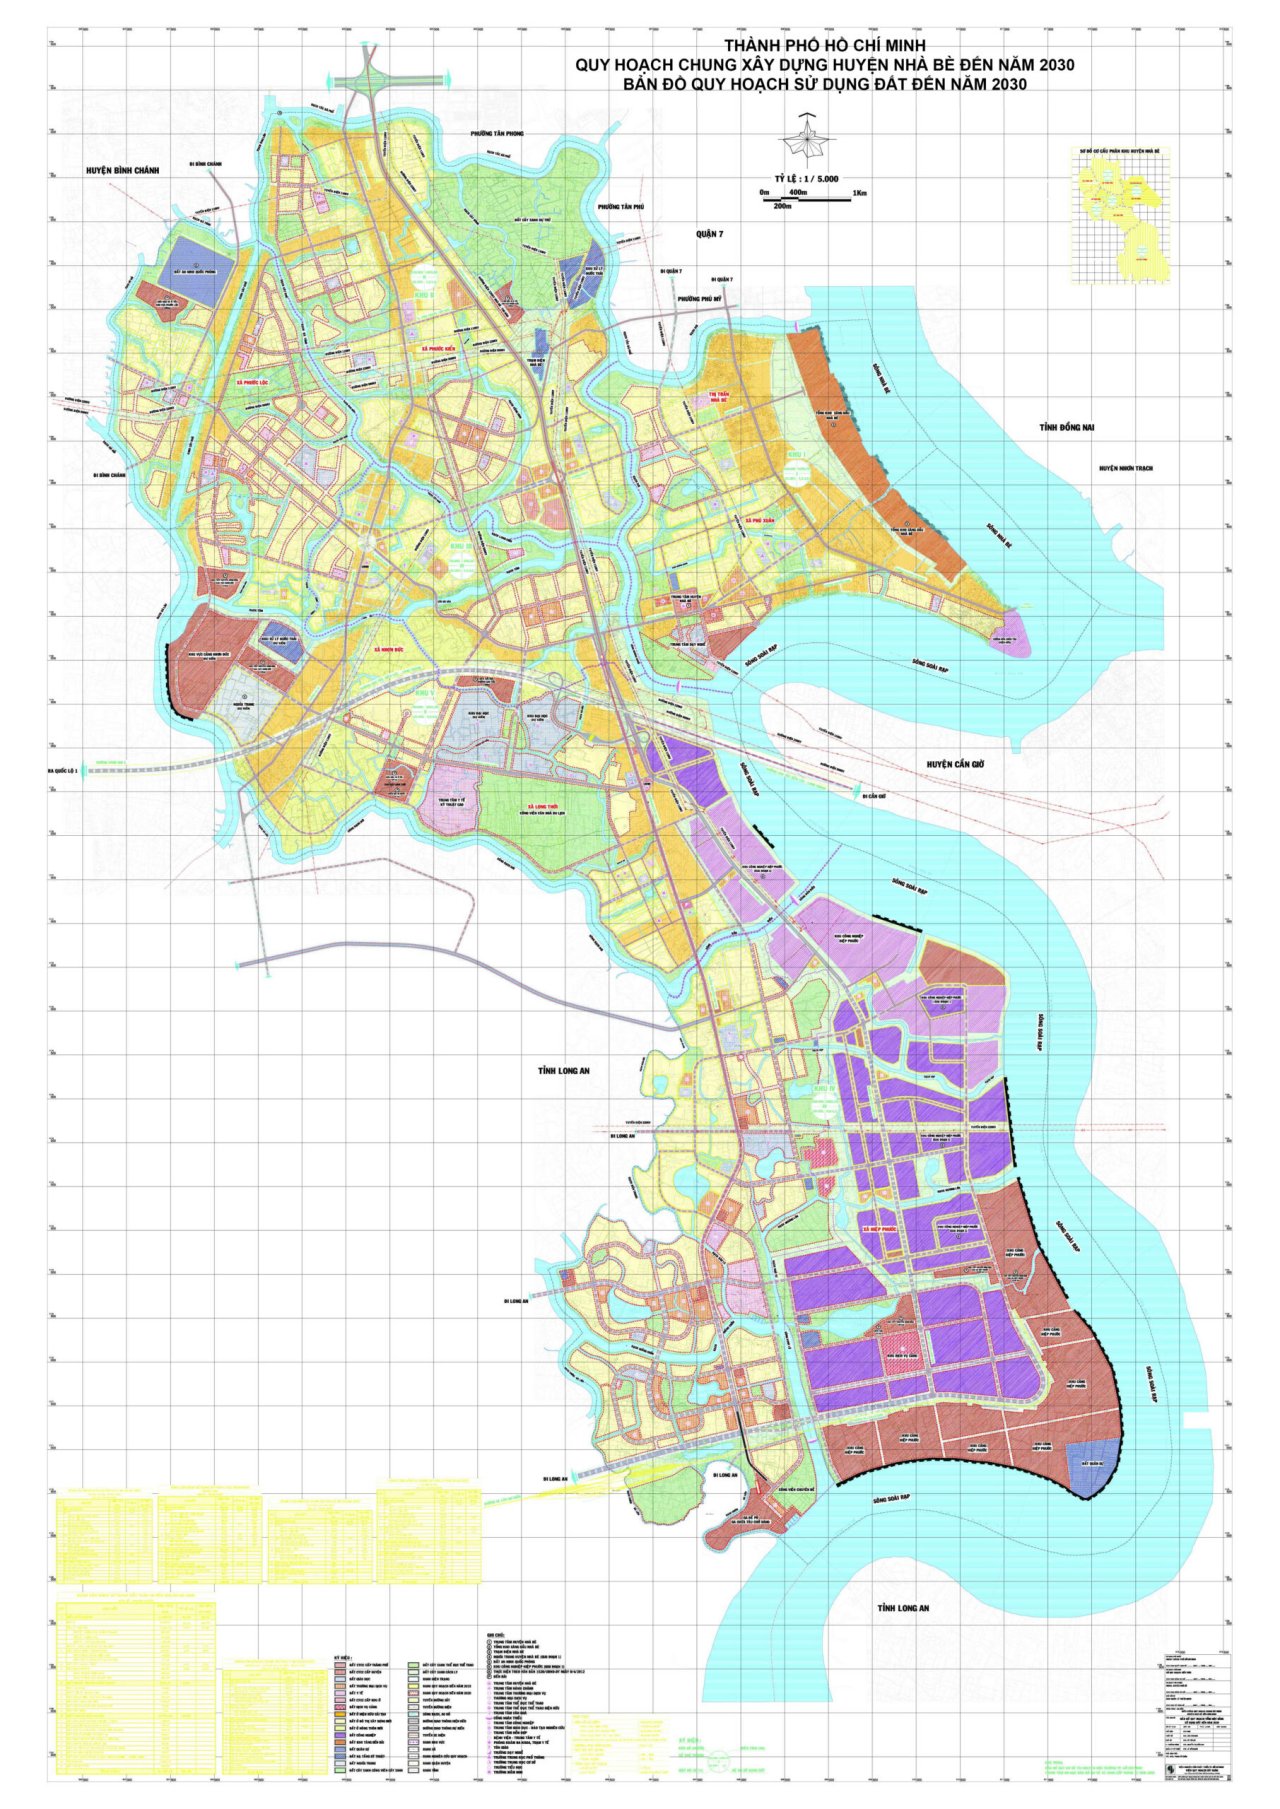 Bản đồ quy hoạch sử dụng đất tại huyện Nhà Bè đến năm 2030